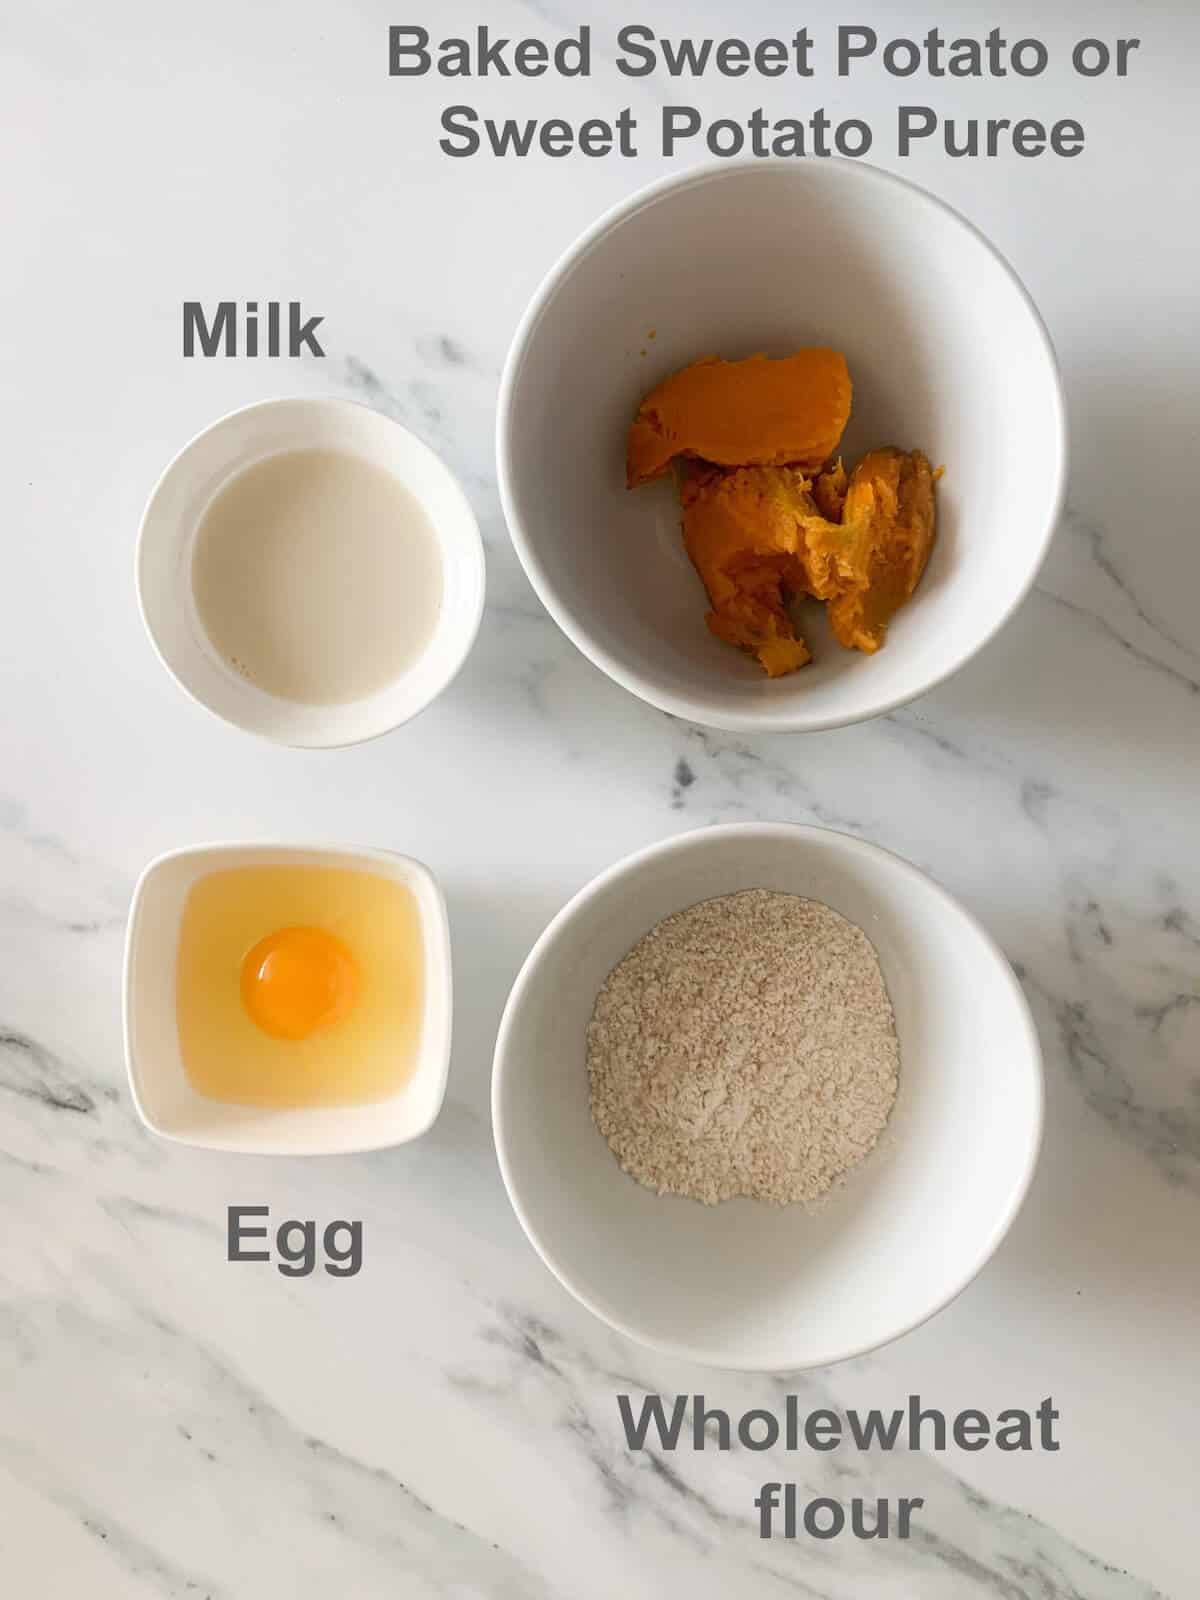 ingredients - egg, wholewheat flour, milk, sweet potato puree or baked sweet potato 